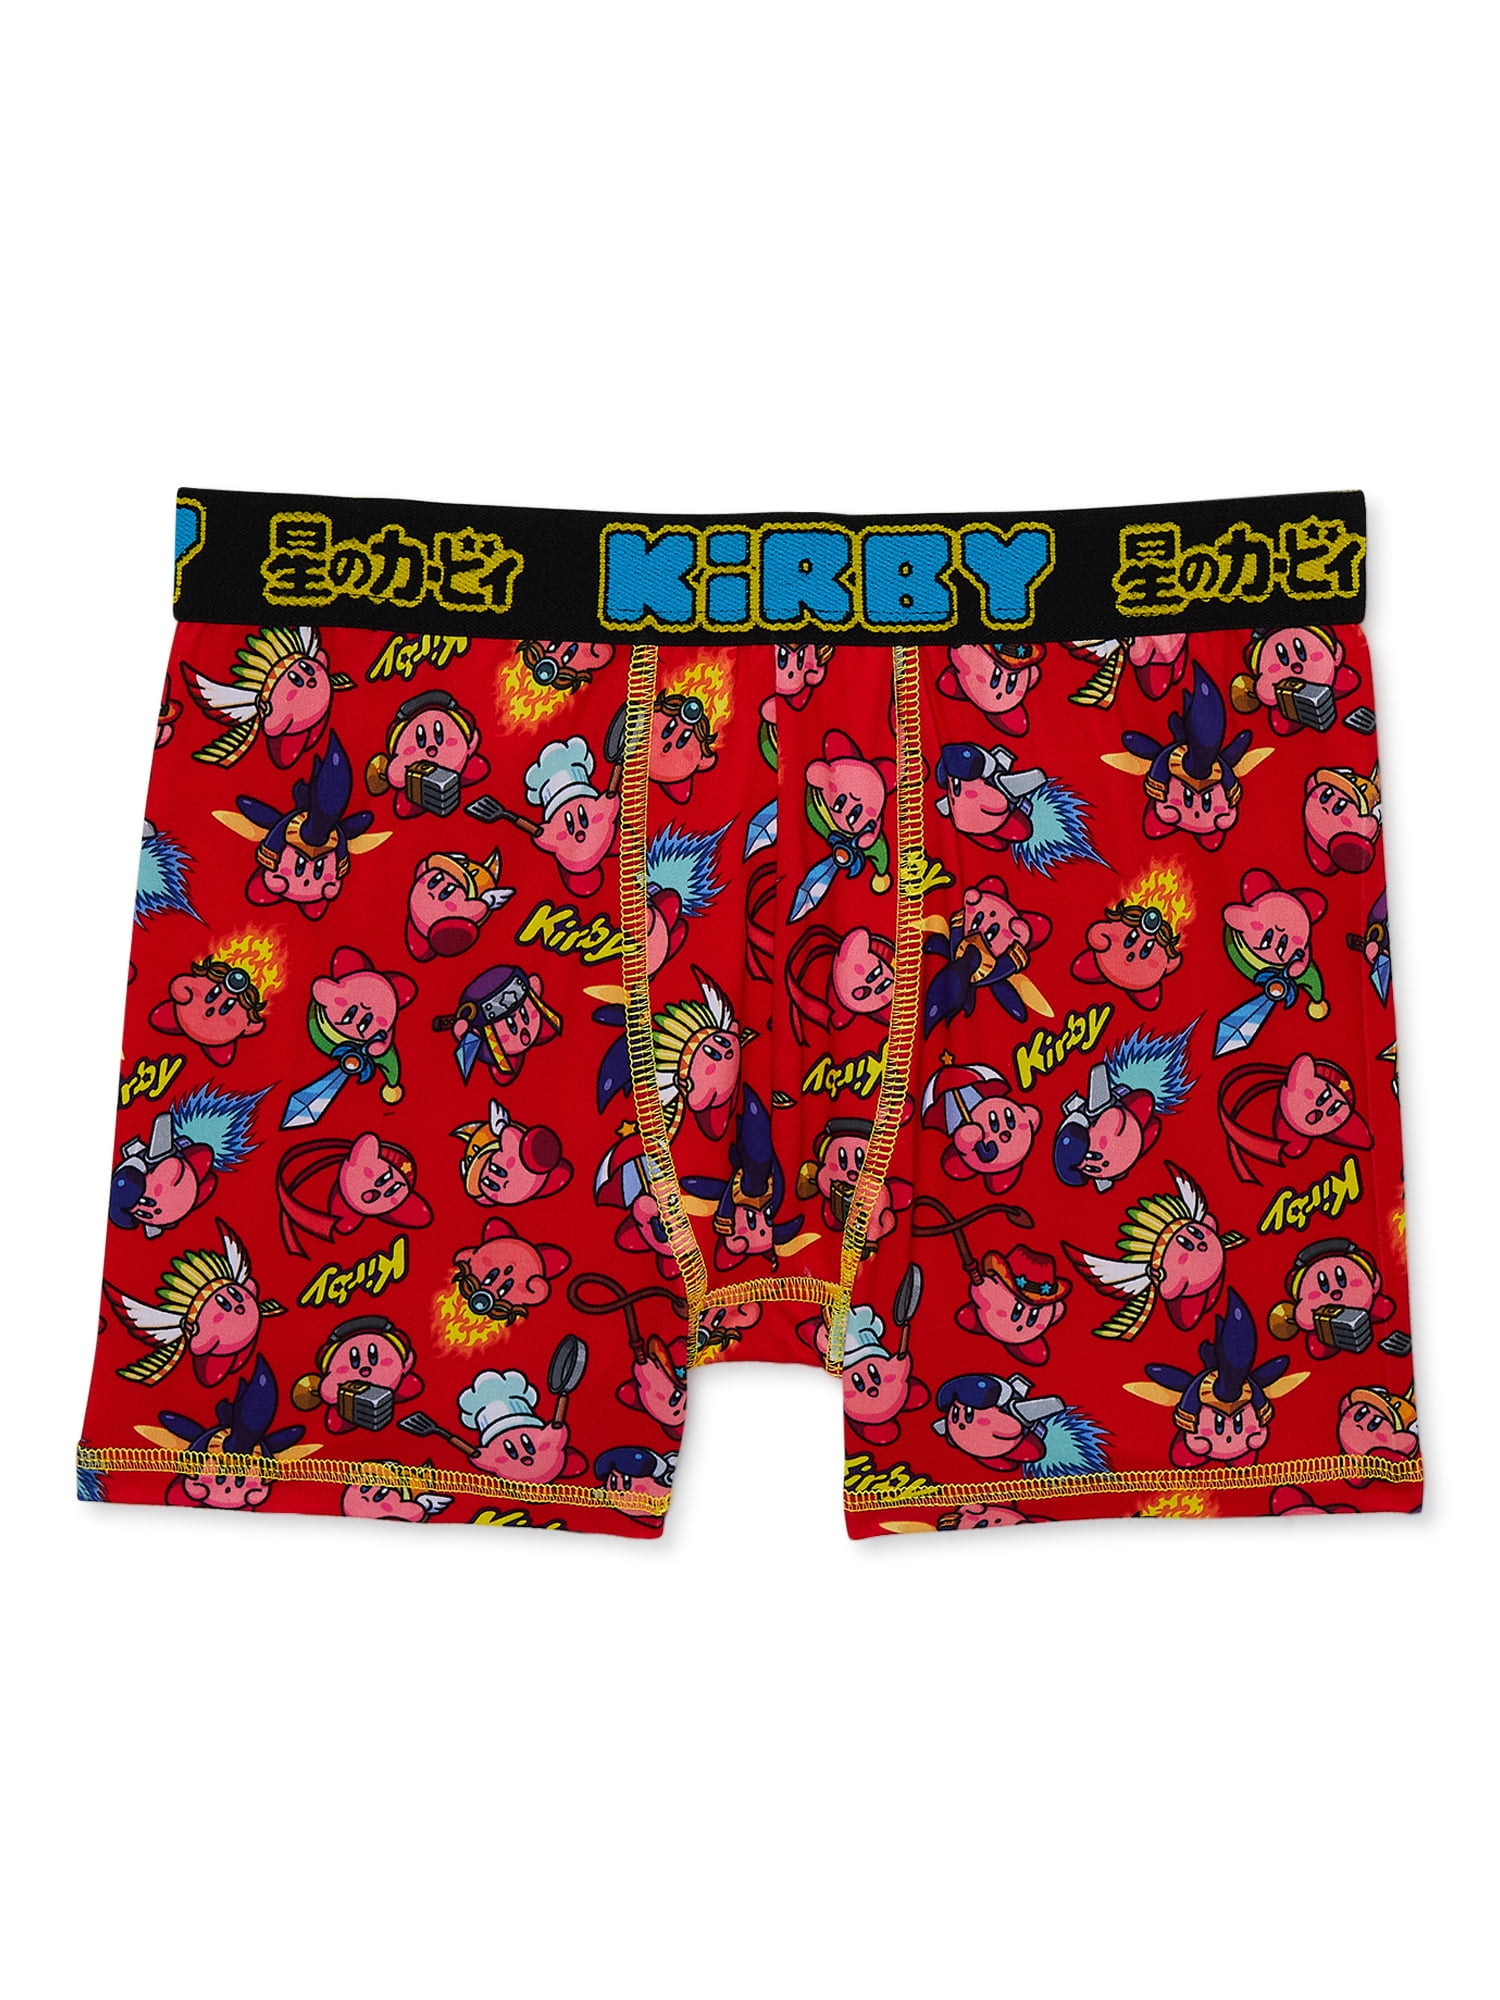 Kirby Boys Boxer Brief Underwear, 4-Pack, Sizes XS-XL